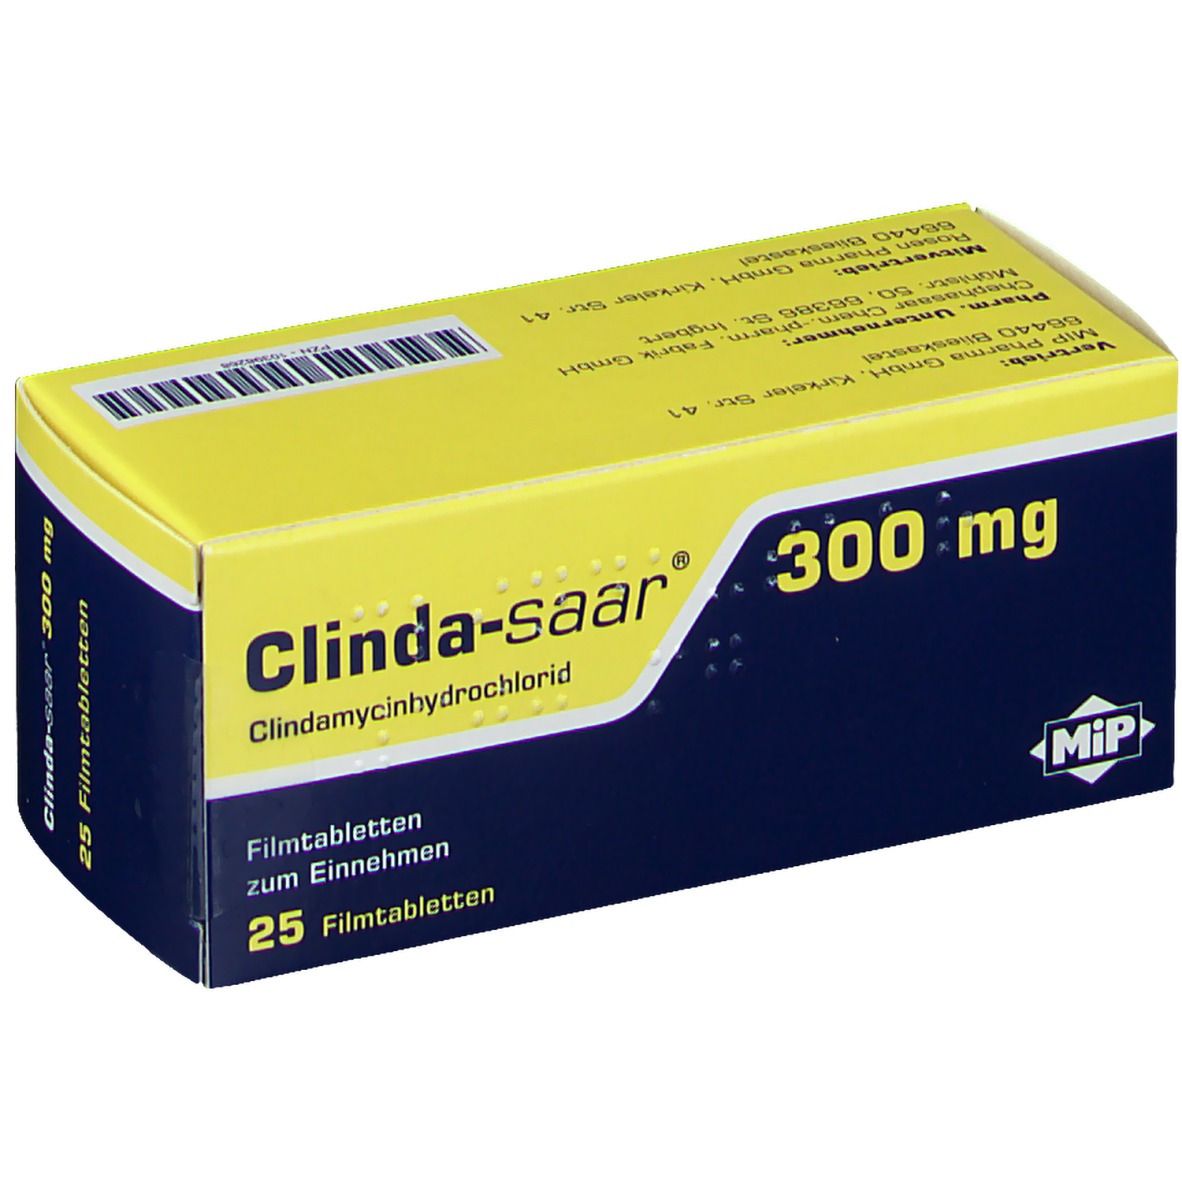 Clinda-saar® 300 mg